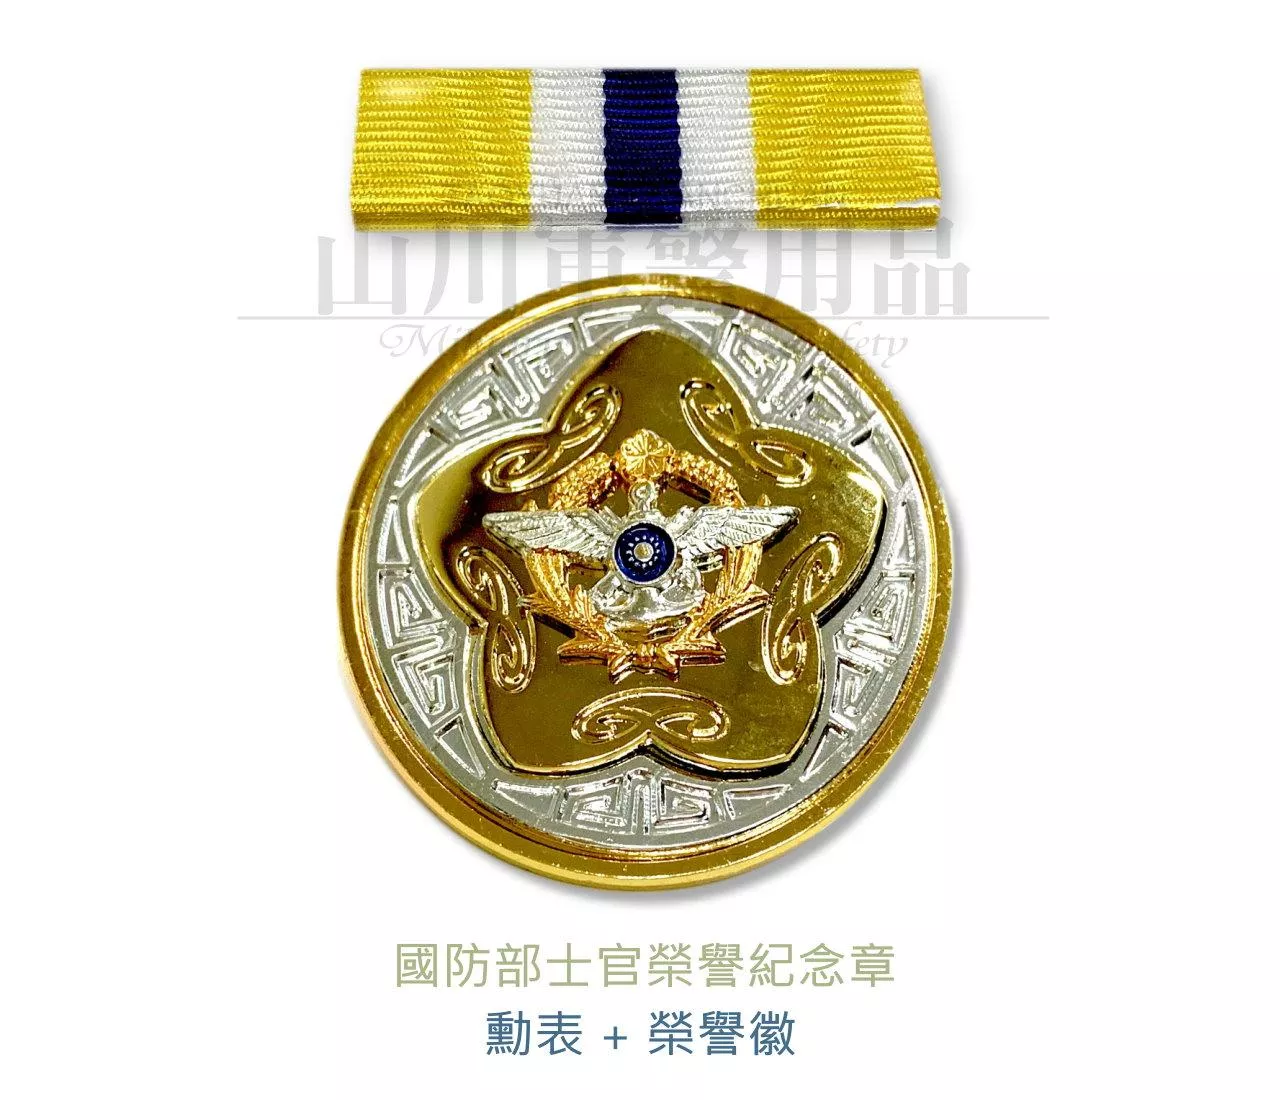 士官二十年榮譽徽 國防三軍士官榮譽徽